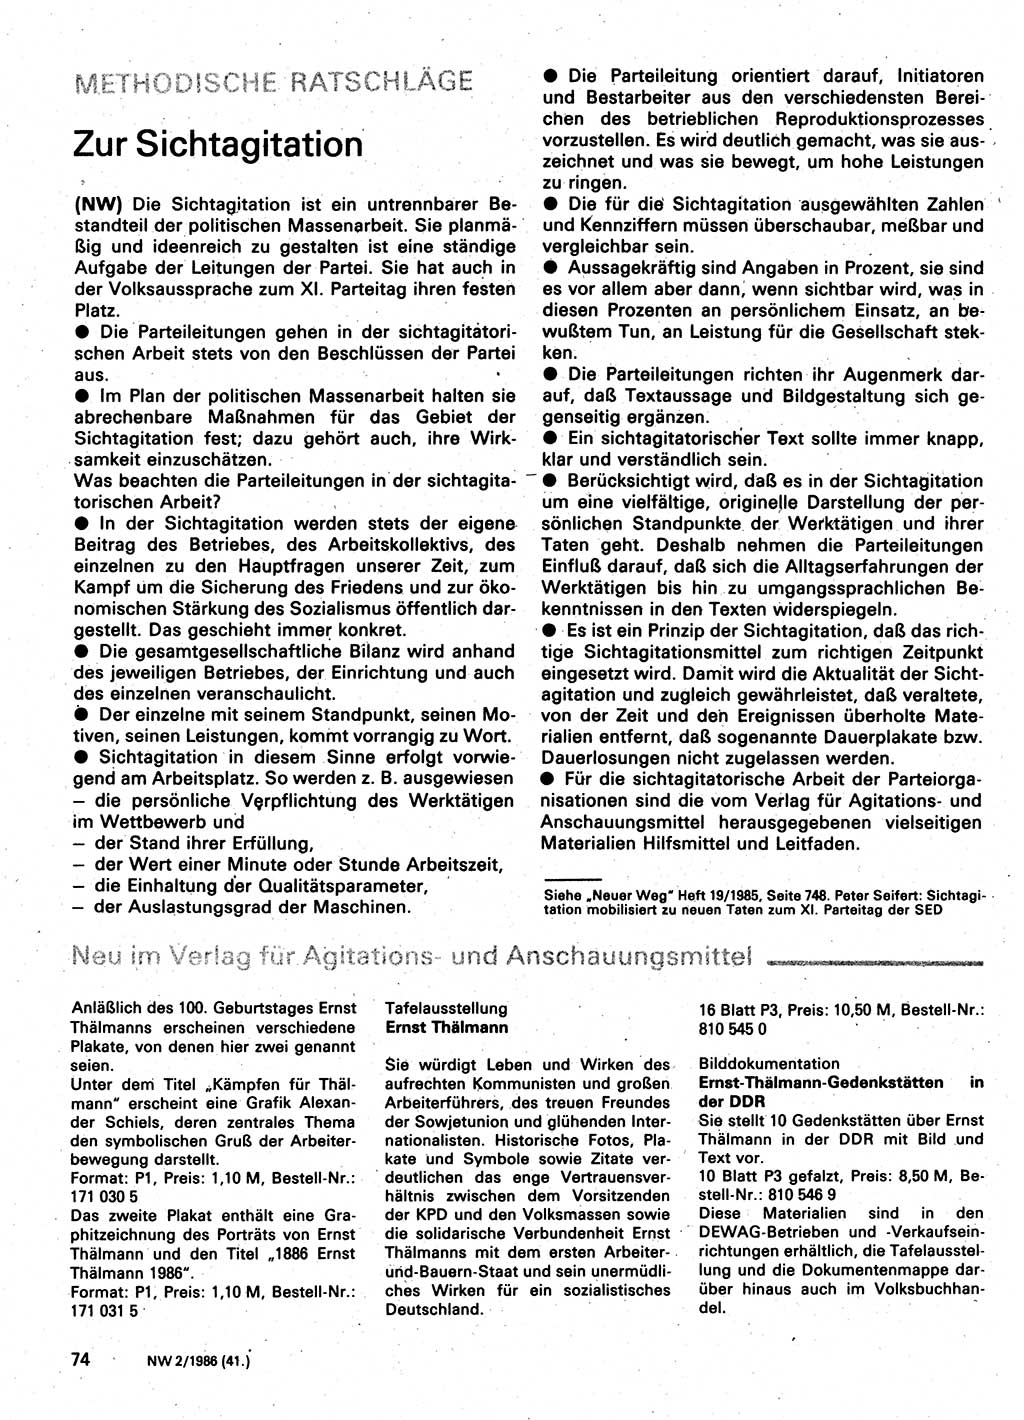 Neuer Weg (NW), Organ des Zentralkomitees (ZK) der SED (Sozialistische Einheitspartei Deutschlands) für Fragen des Parteilebens, 41. Jahrgang [Deutsche Demokratische Republik (DDR)] 1986, Seite 74 (NW ZK SED DDR 1986, S. 74)